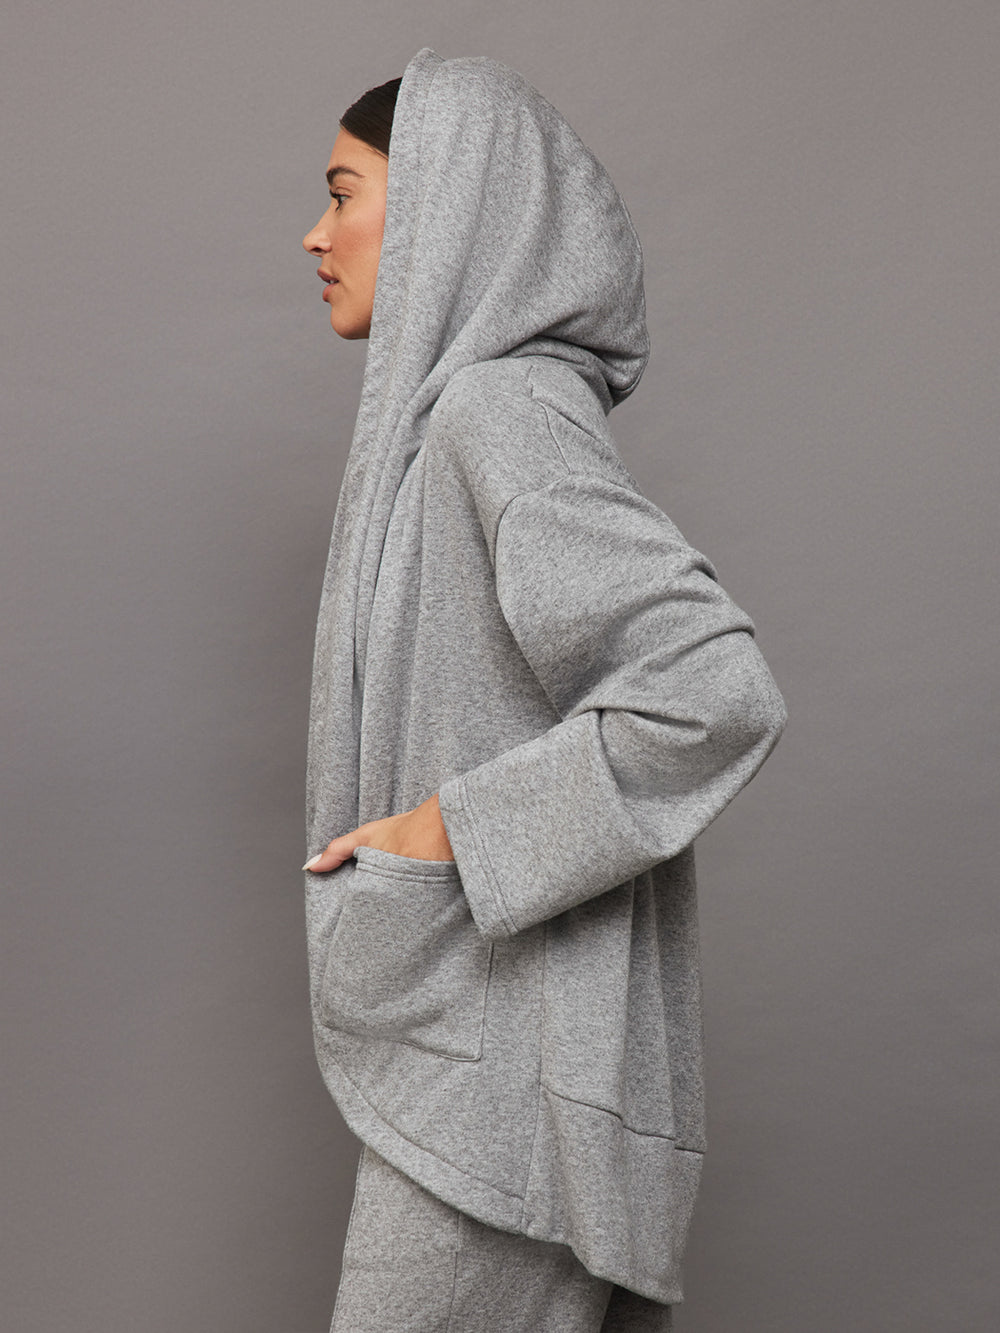 Beyond Yoga Cozy Fleece Convertible Cardigan in Charcoal Heather Grey